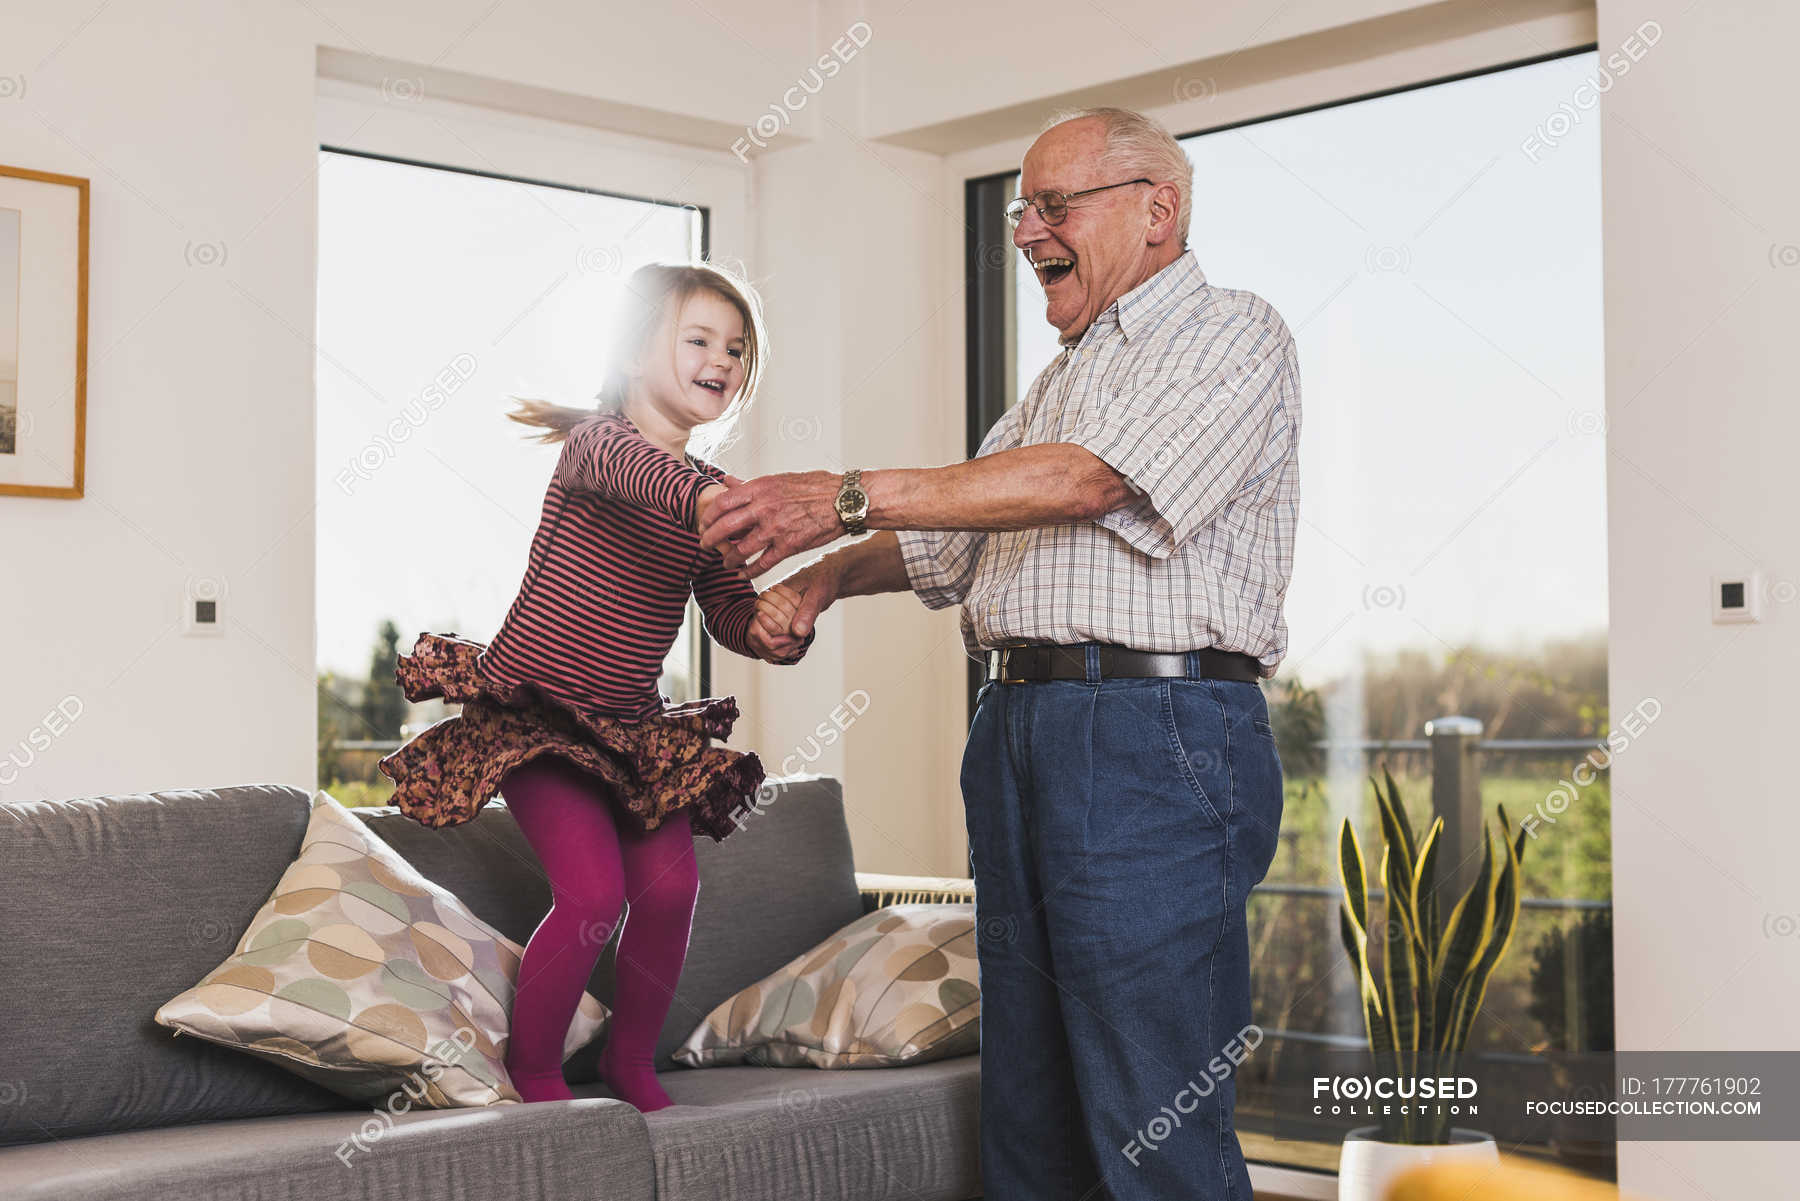 Дед с большим членом с внучкой